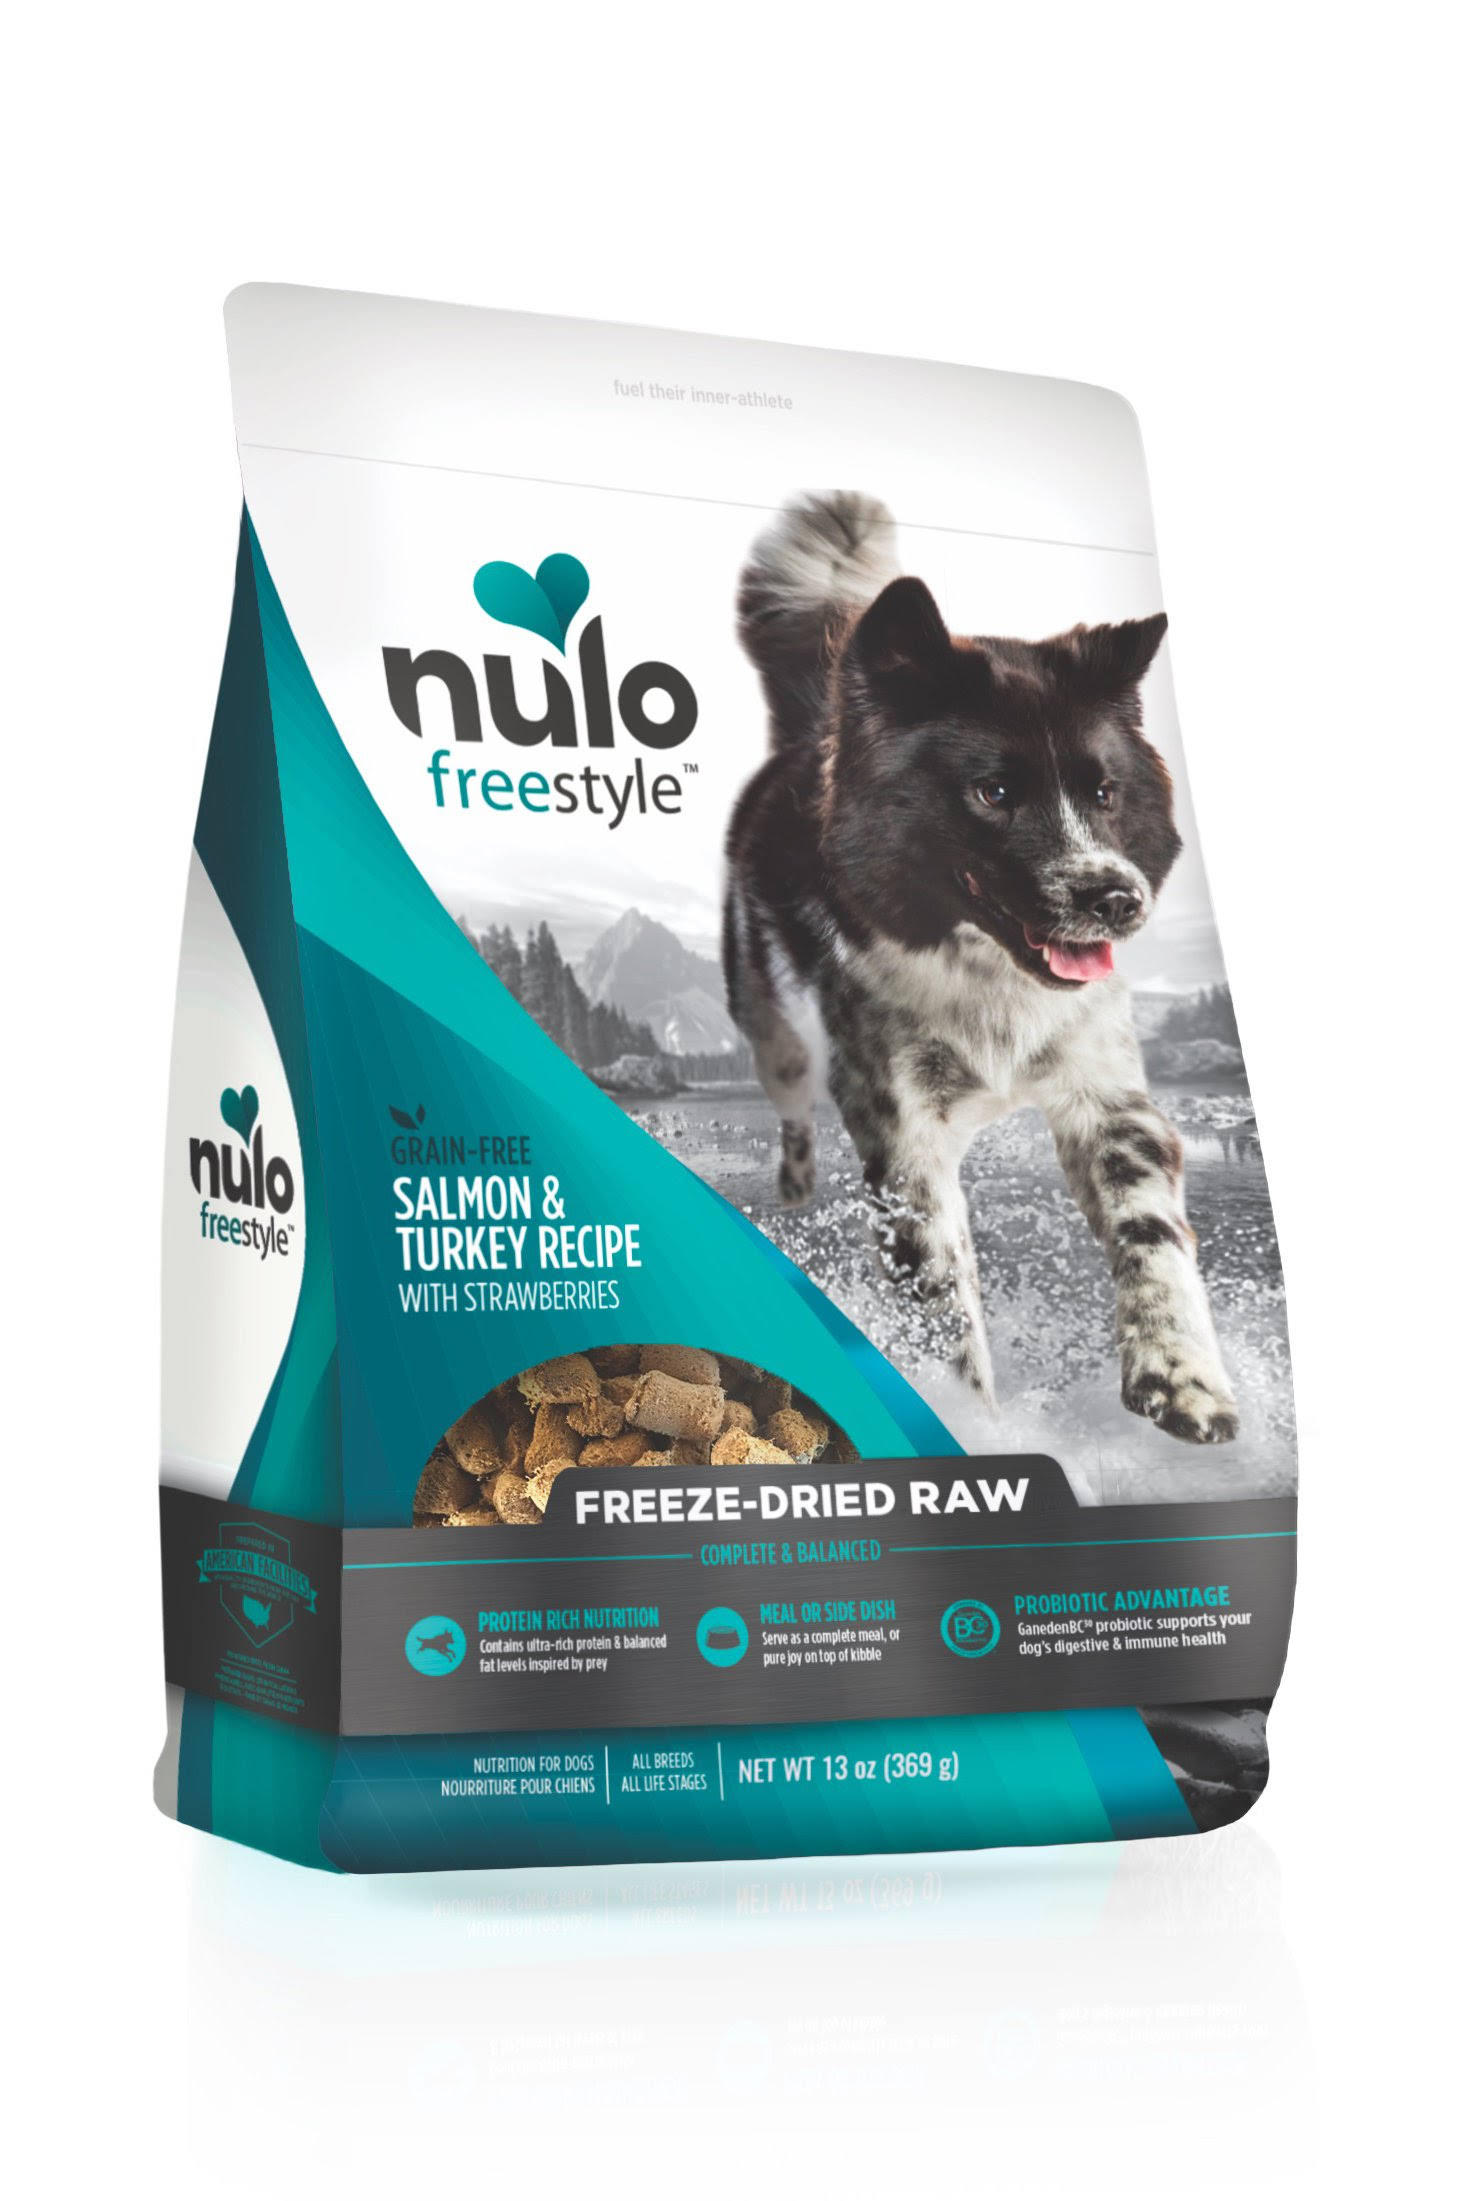 Nulo Freestyle Grain Free Salmon & Turkey with Strawberries Freeze-Dried Raw Dog Food 5 oz